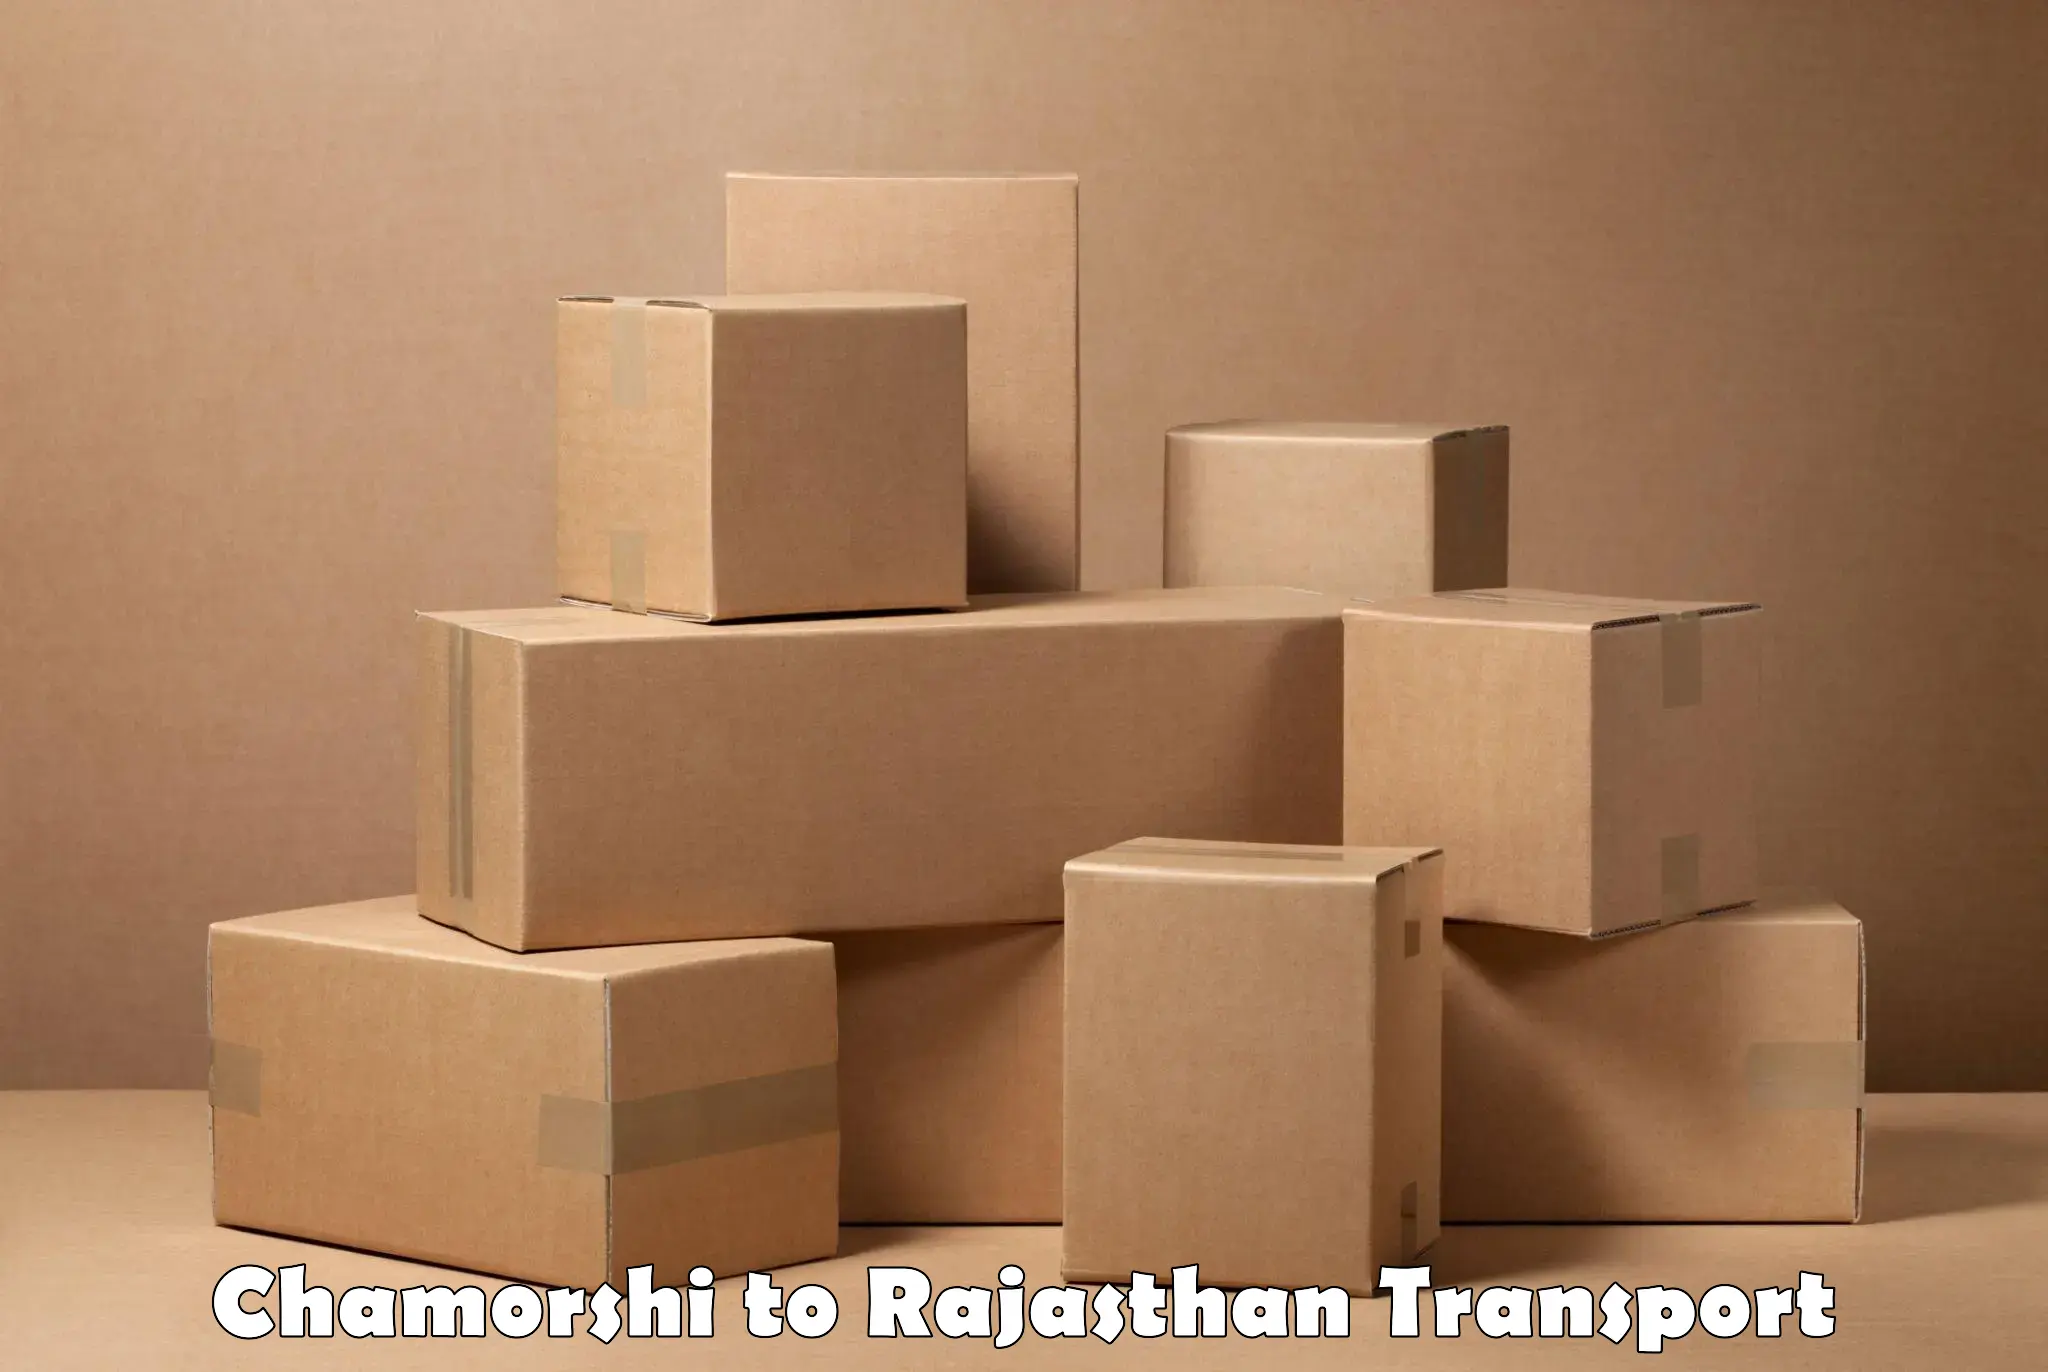 Truck transport companies in India Chamorshi to Pratapgarh Rajasthan